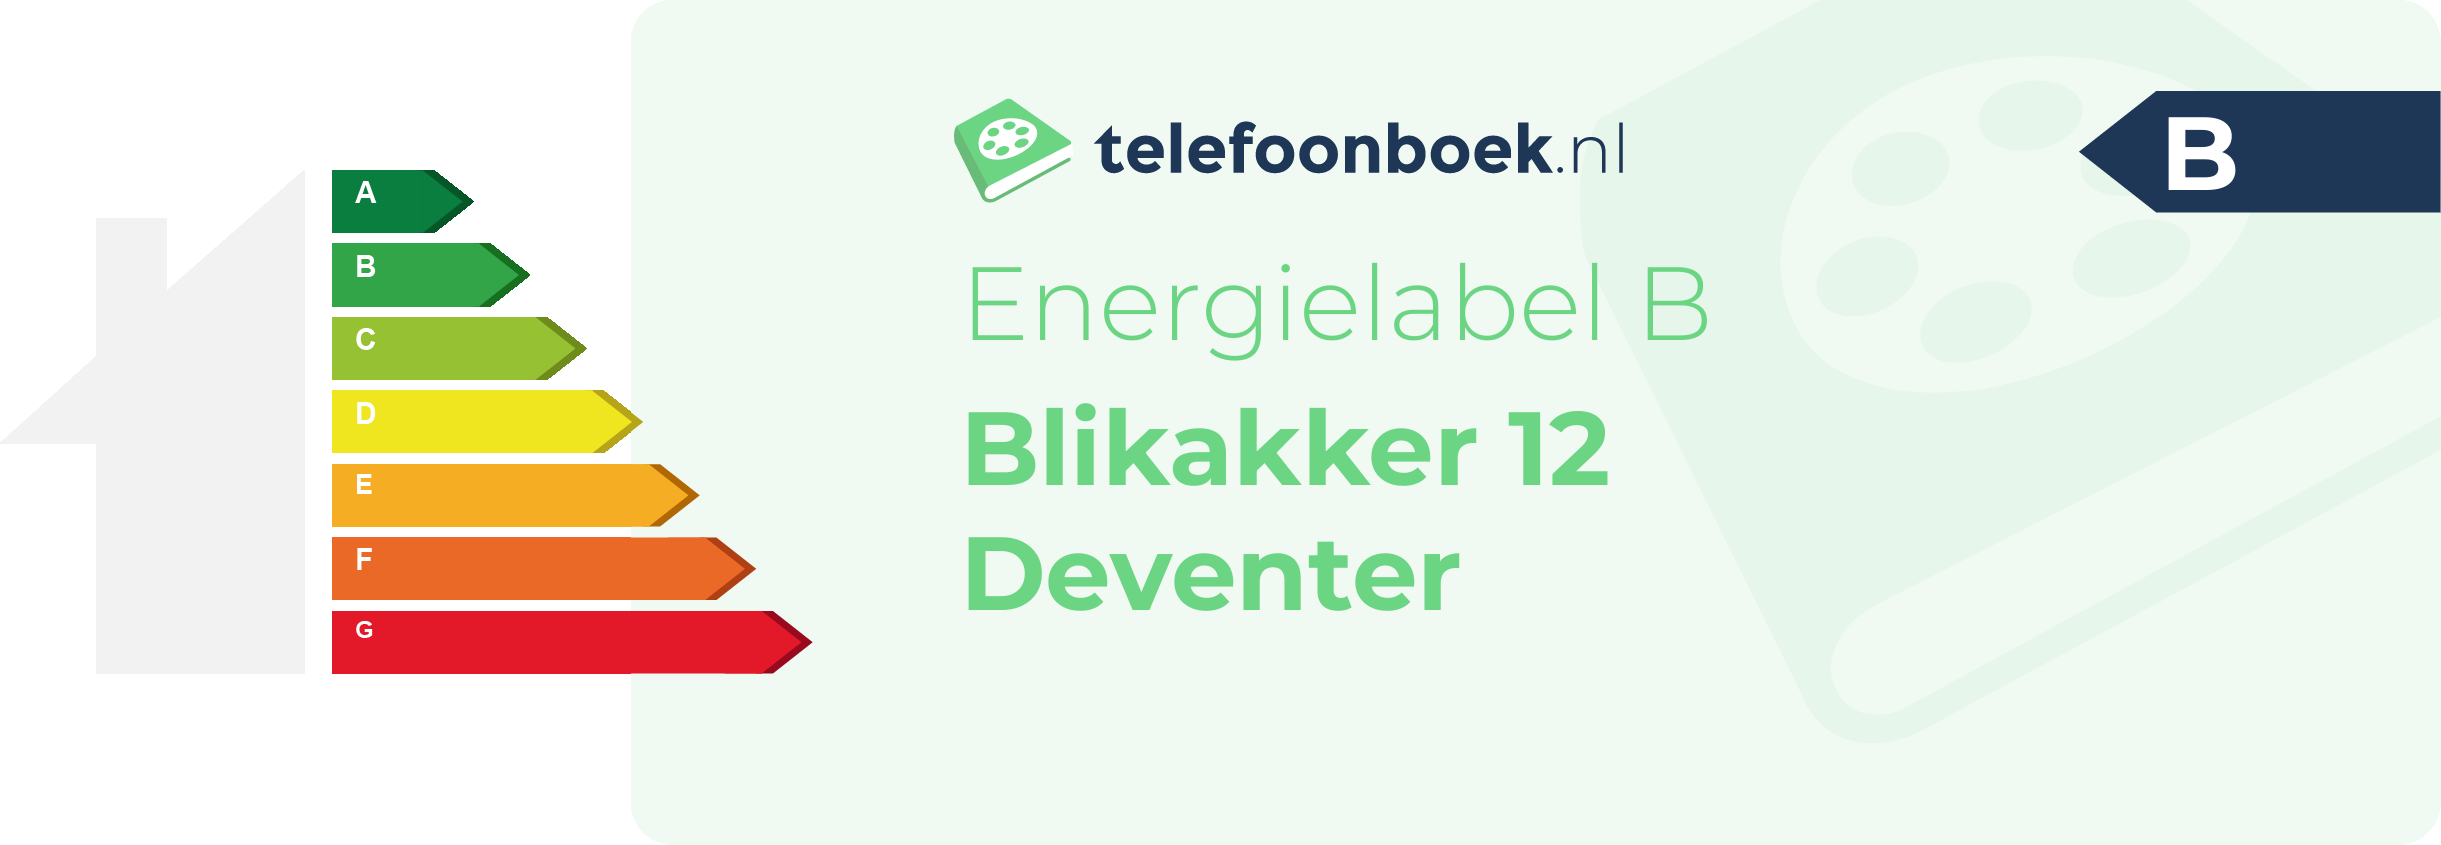 Energielabel Blikakker 12 Deventer